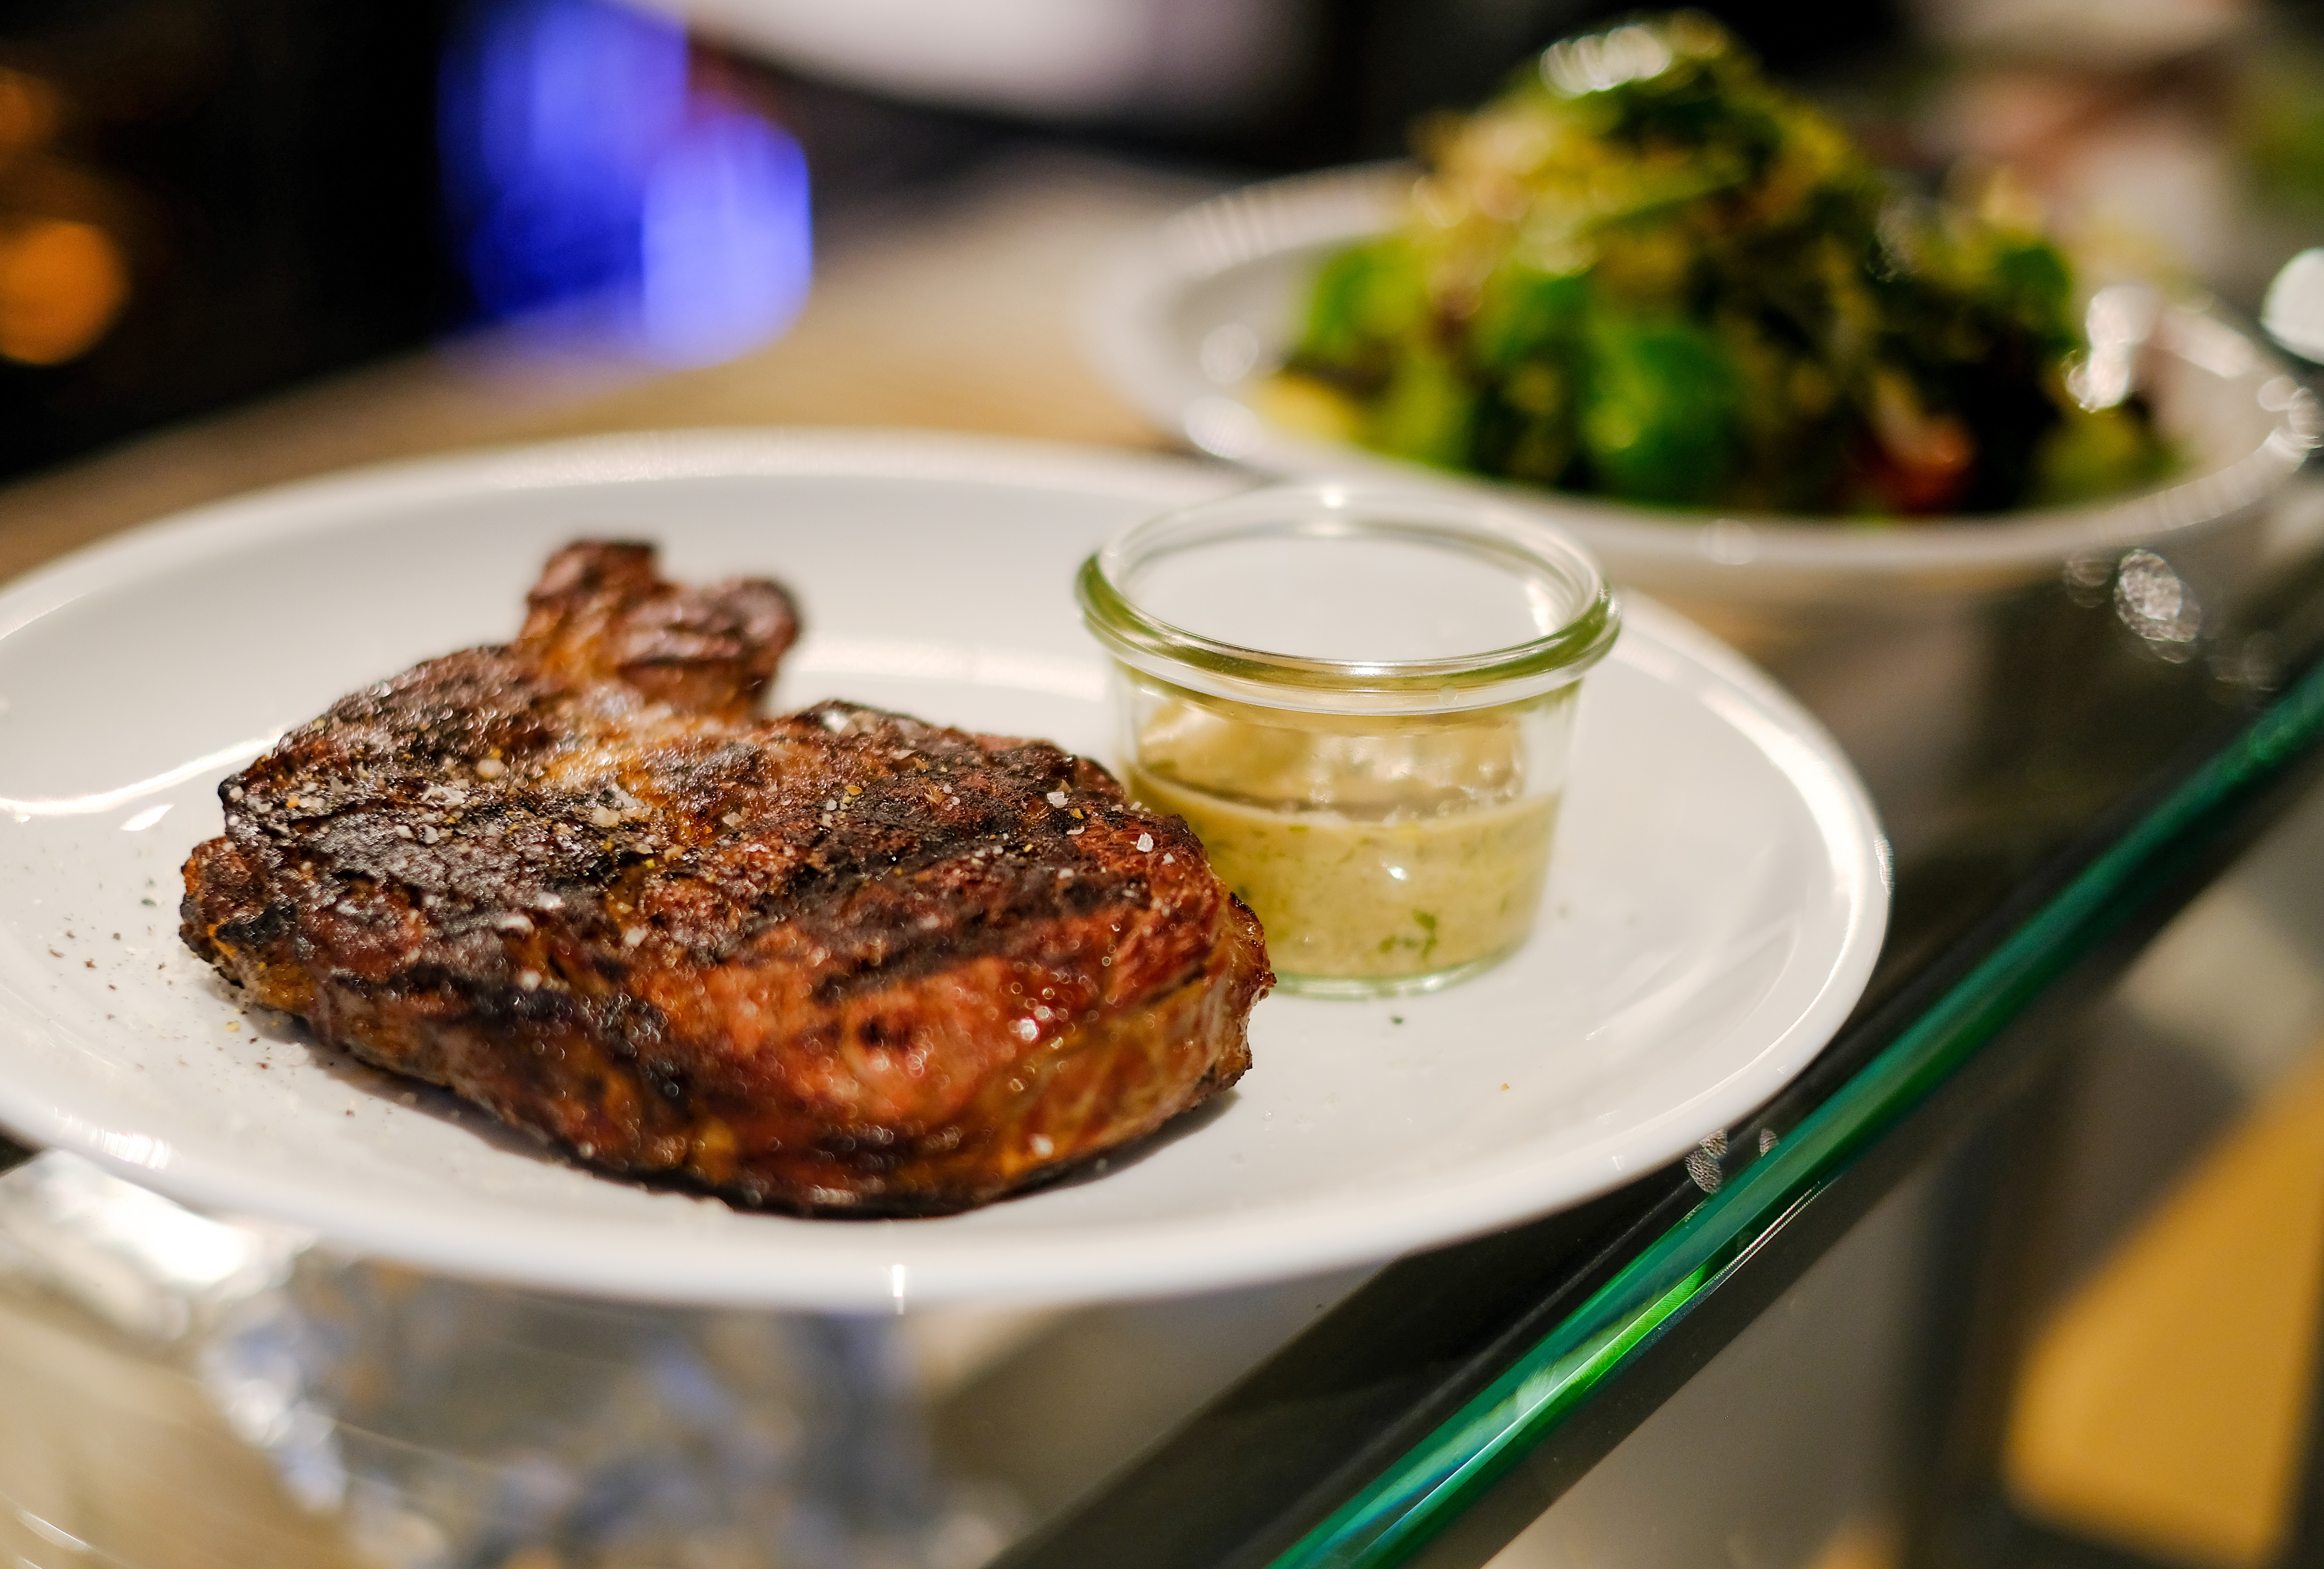 Ein saftig gegrilltes Steak auf einem Teller mit einer Sauce | picture alliance / dpa